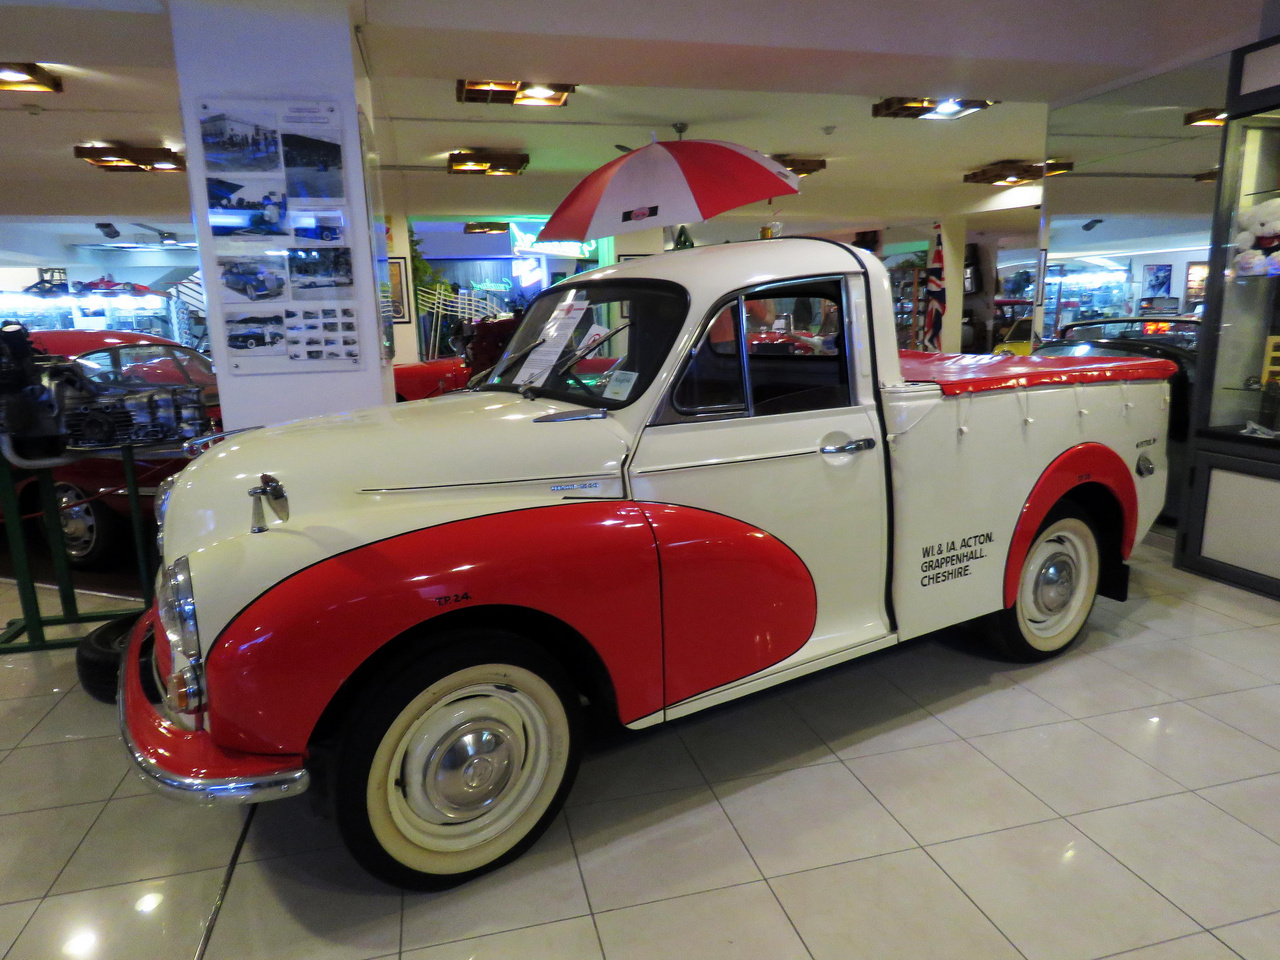 Az Alec Issigonis vezetésével konstruált, és 1948-tól 1971-ig gyártott Morris Minorok igen népszerűek voltak Britanniában a maguk idején. A Minorok a Mini szerkezeti koncepciója alapján, de nagyobb méretben készültek. A pickup verzió 1952-től volt elérhető. A teherszállításra tekintettel több konstrukciós módosítás is történt: a pickupok alá alváz került, a rugózást megerősítették, a motor sűrítési arányát csökkentették. A zárt furgon változatok a brit Posta flottájában is szép számmal szolgáltak. 